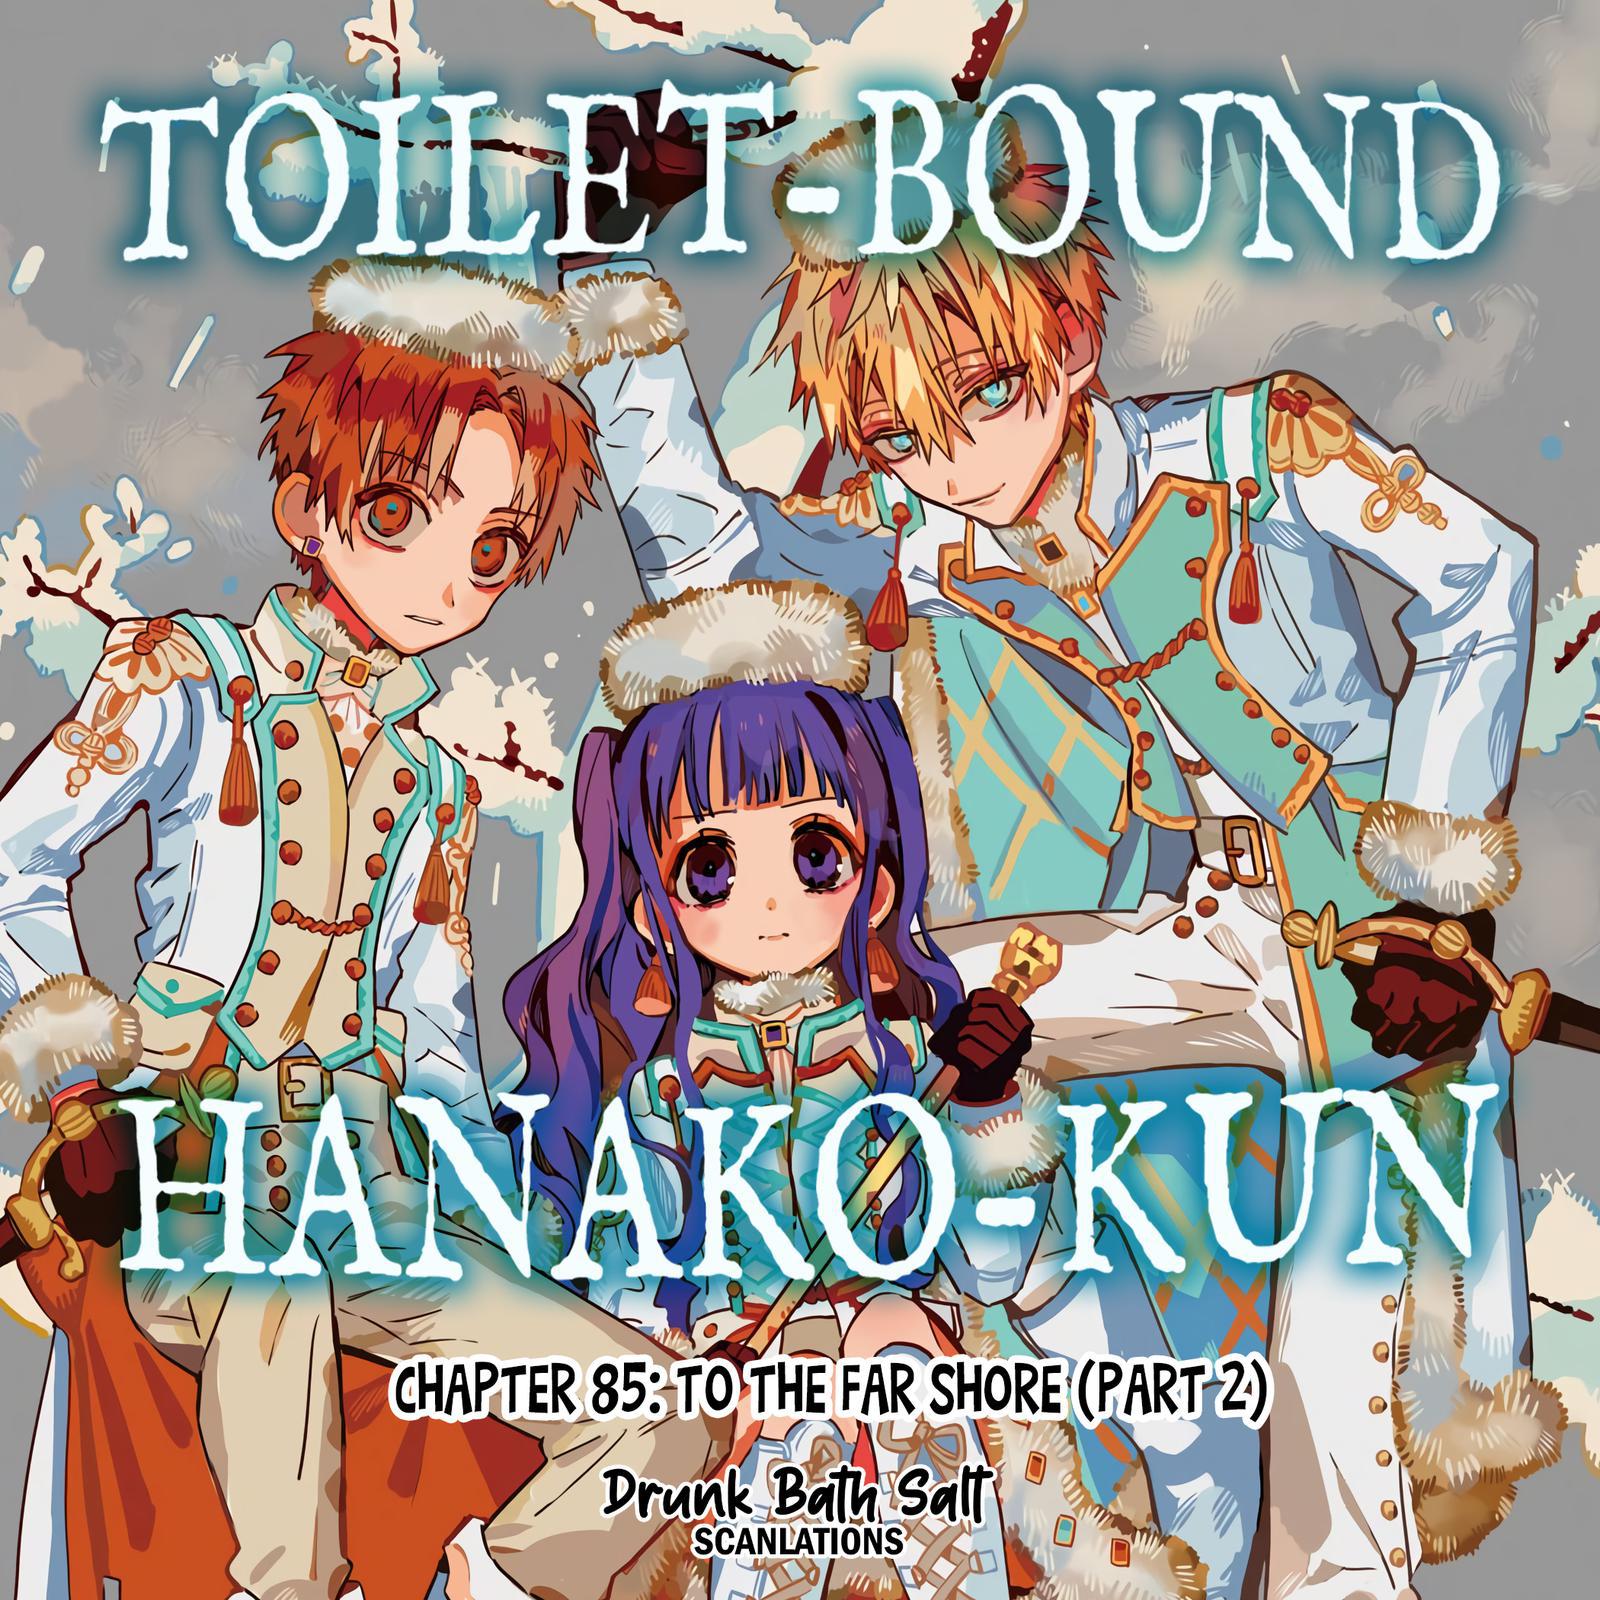 Toilet-bound Hanako-kun chapter 85, Jibaku Shounen Hanako-kun Chapter 85